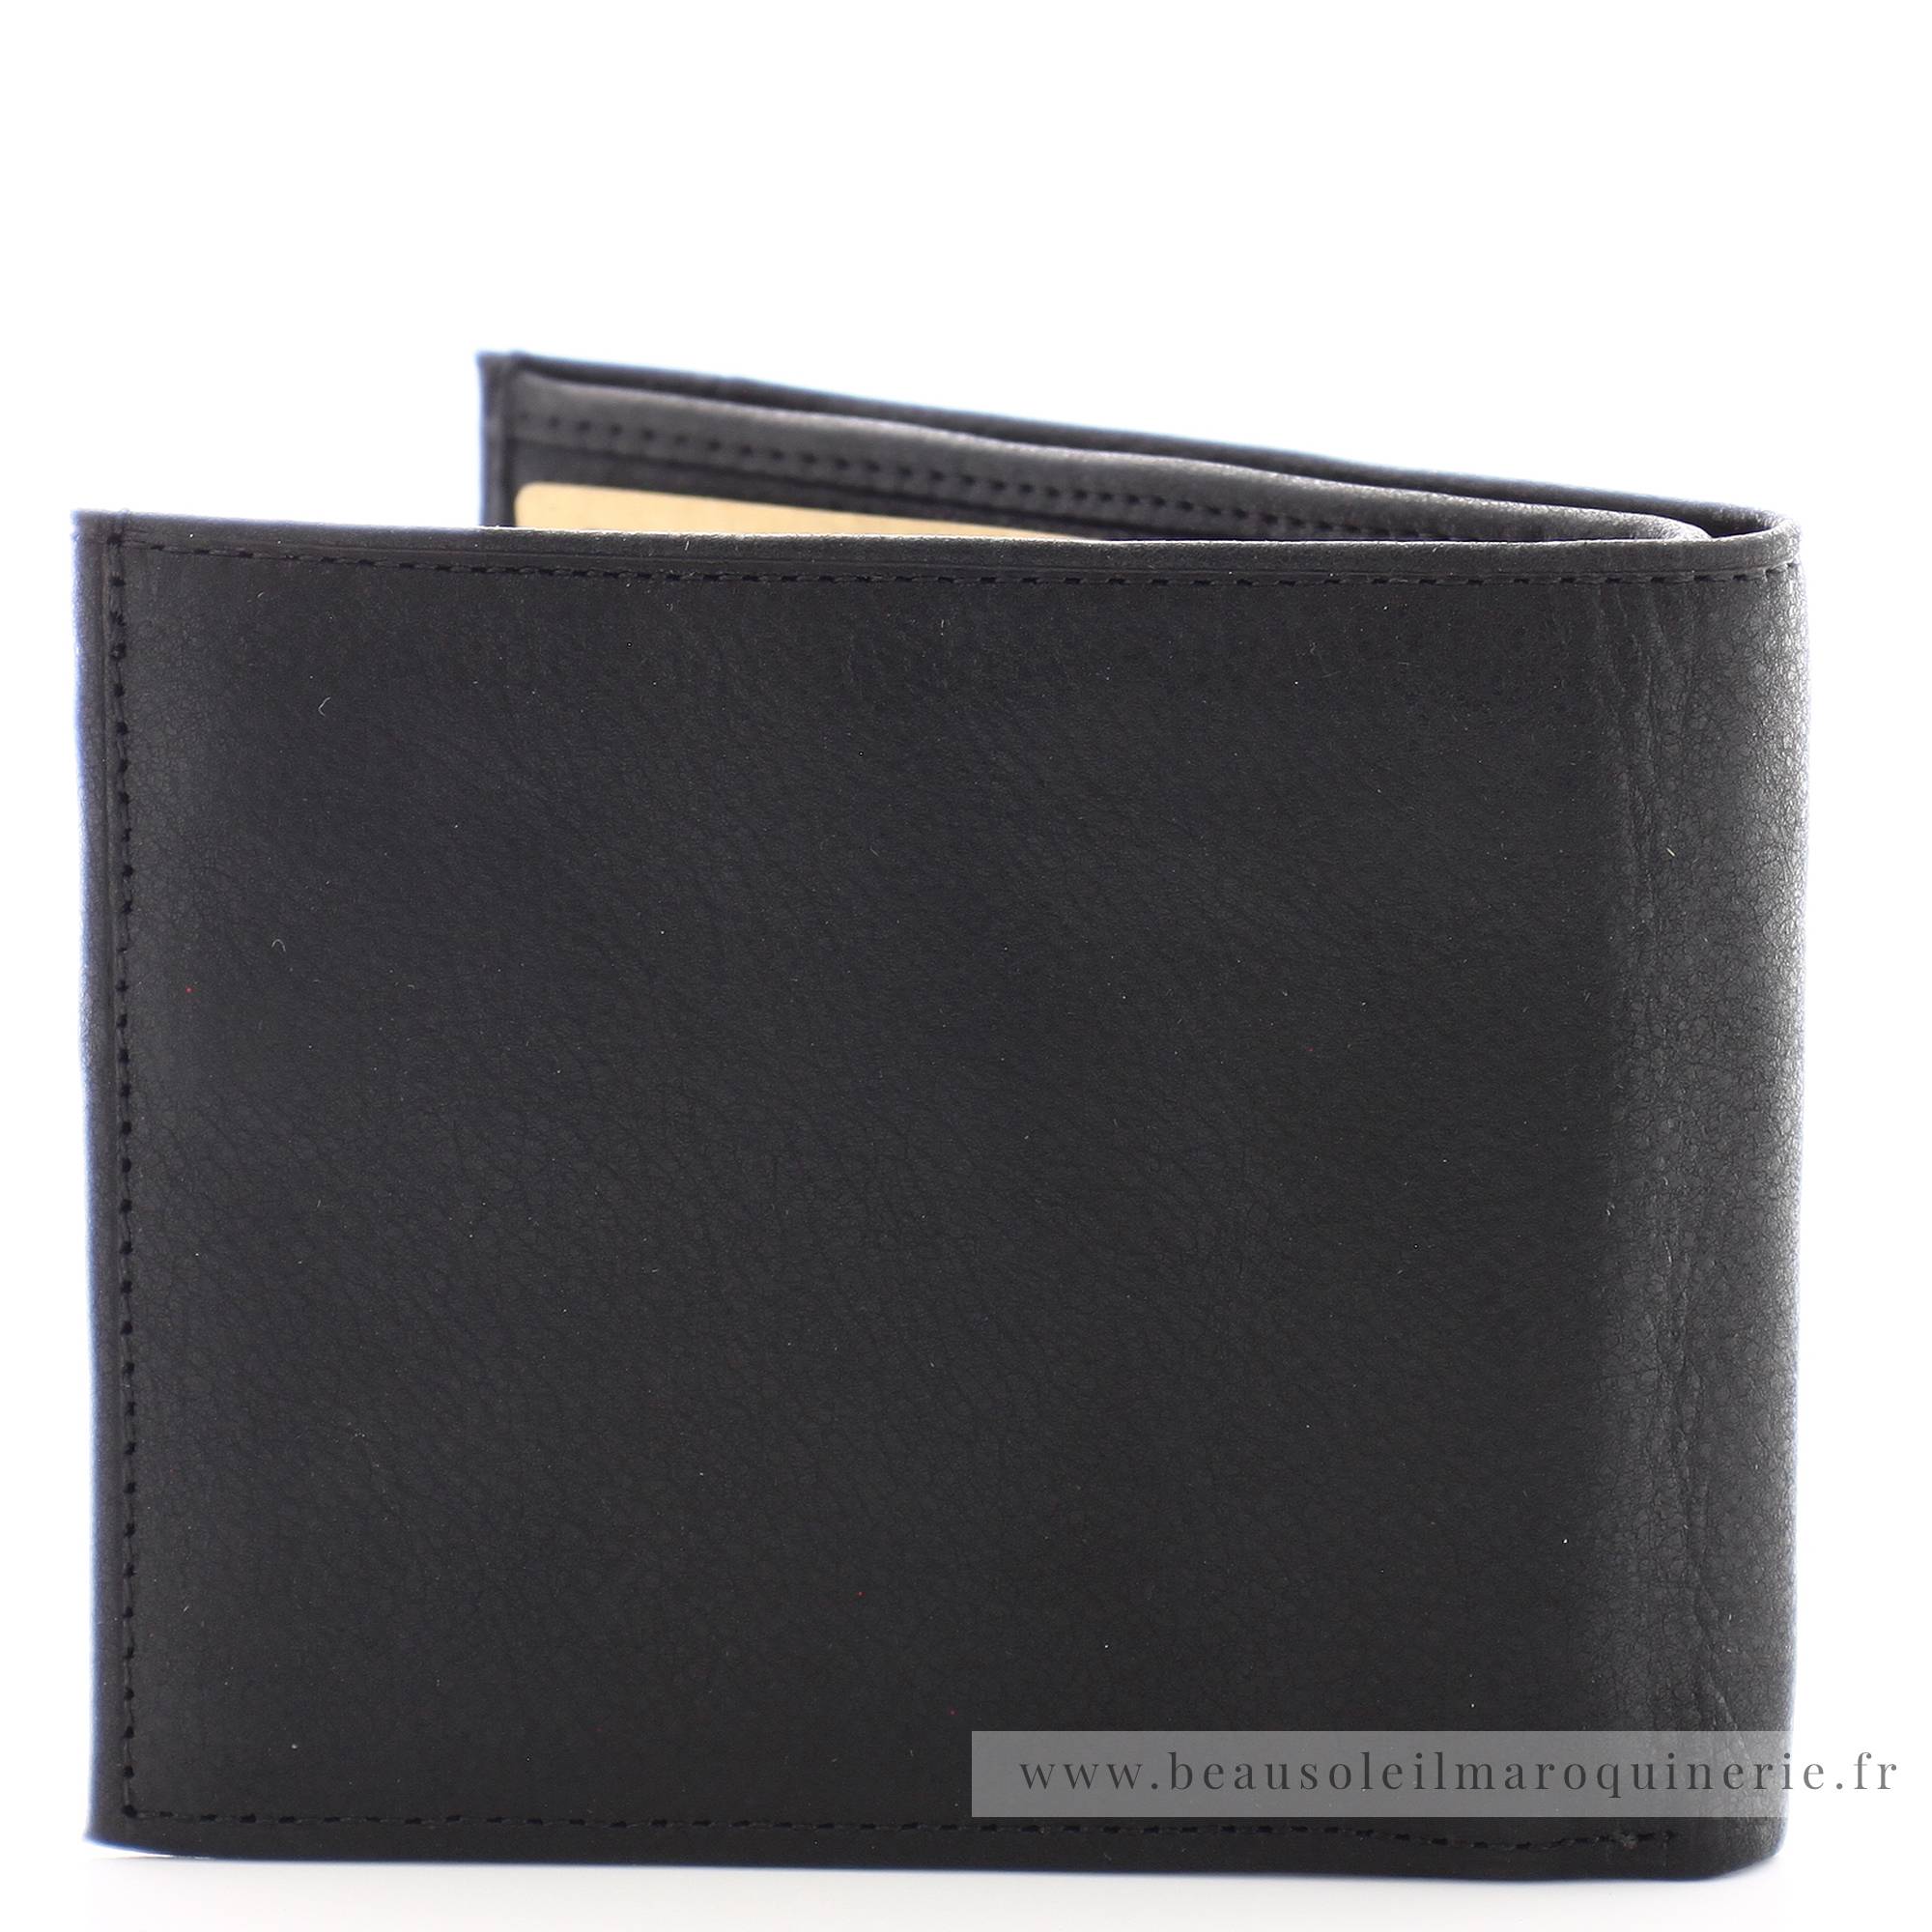 Porte cartes + monnaie en cuir de vachette Arthur & Aston 1438-573 A couleur noir vue de dos